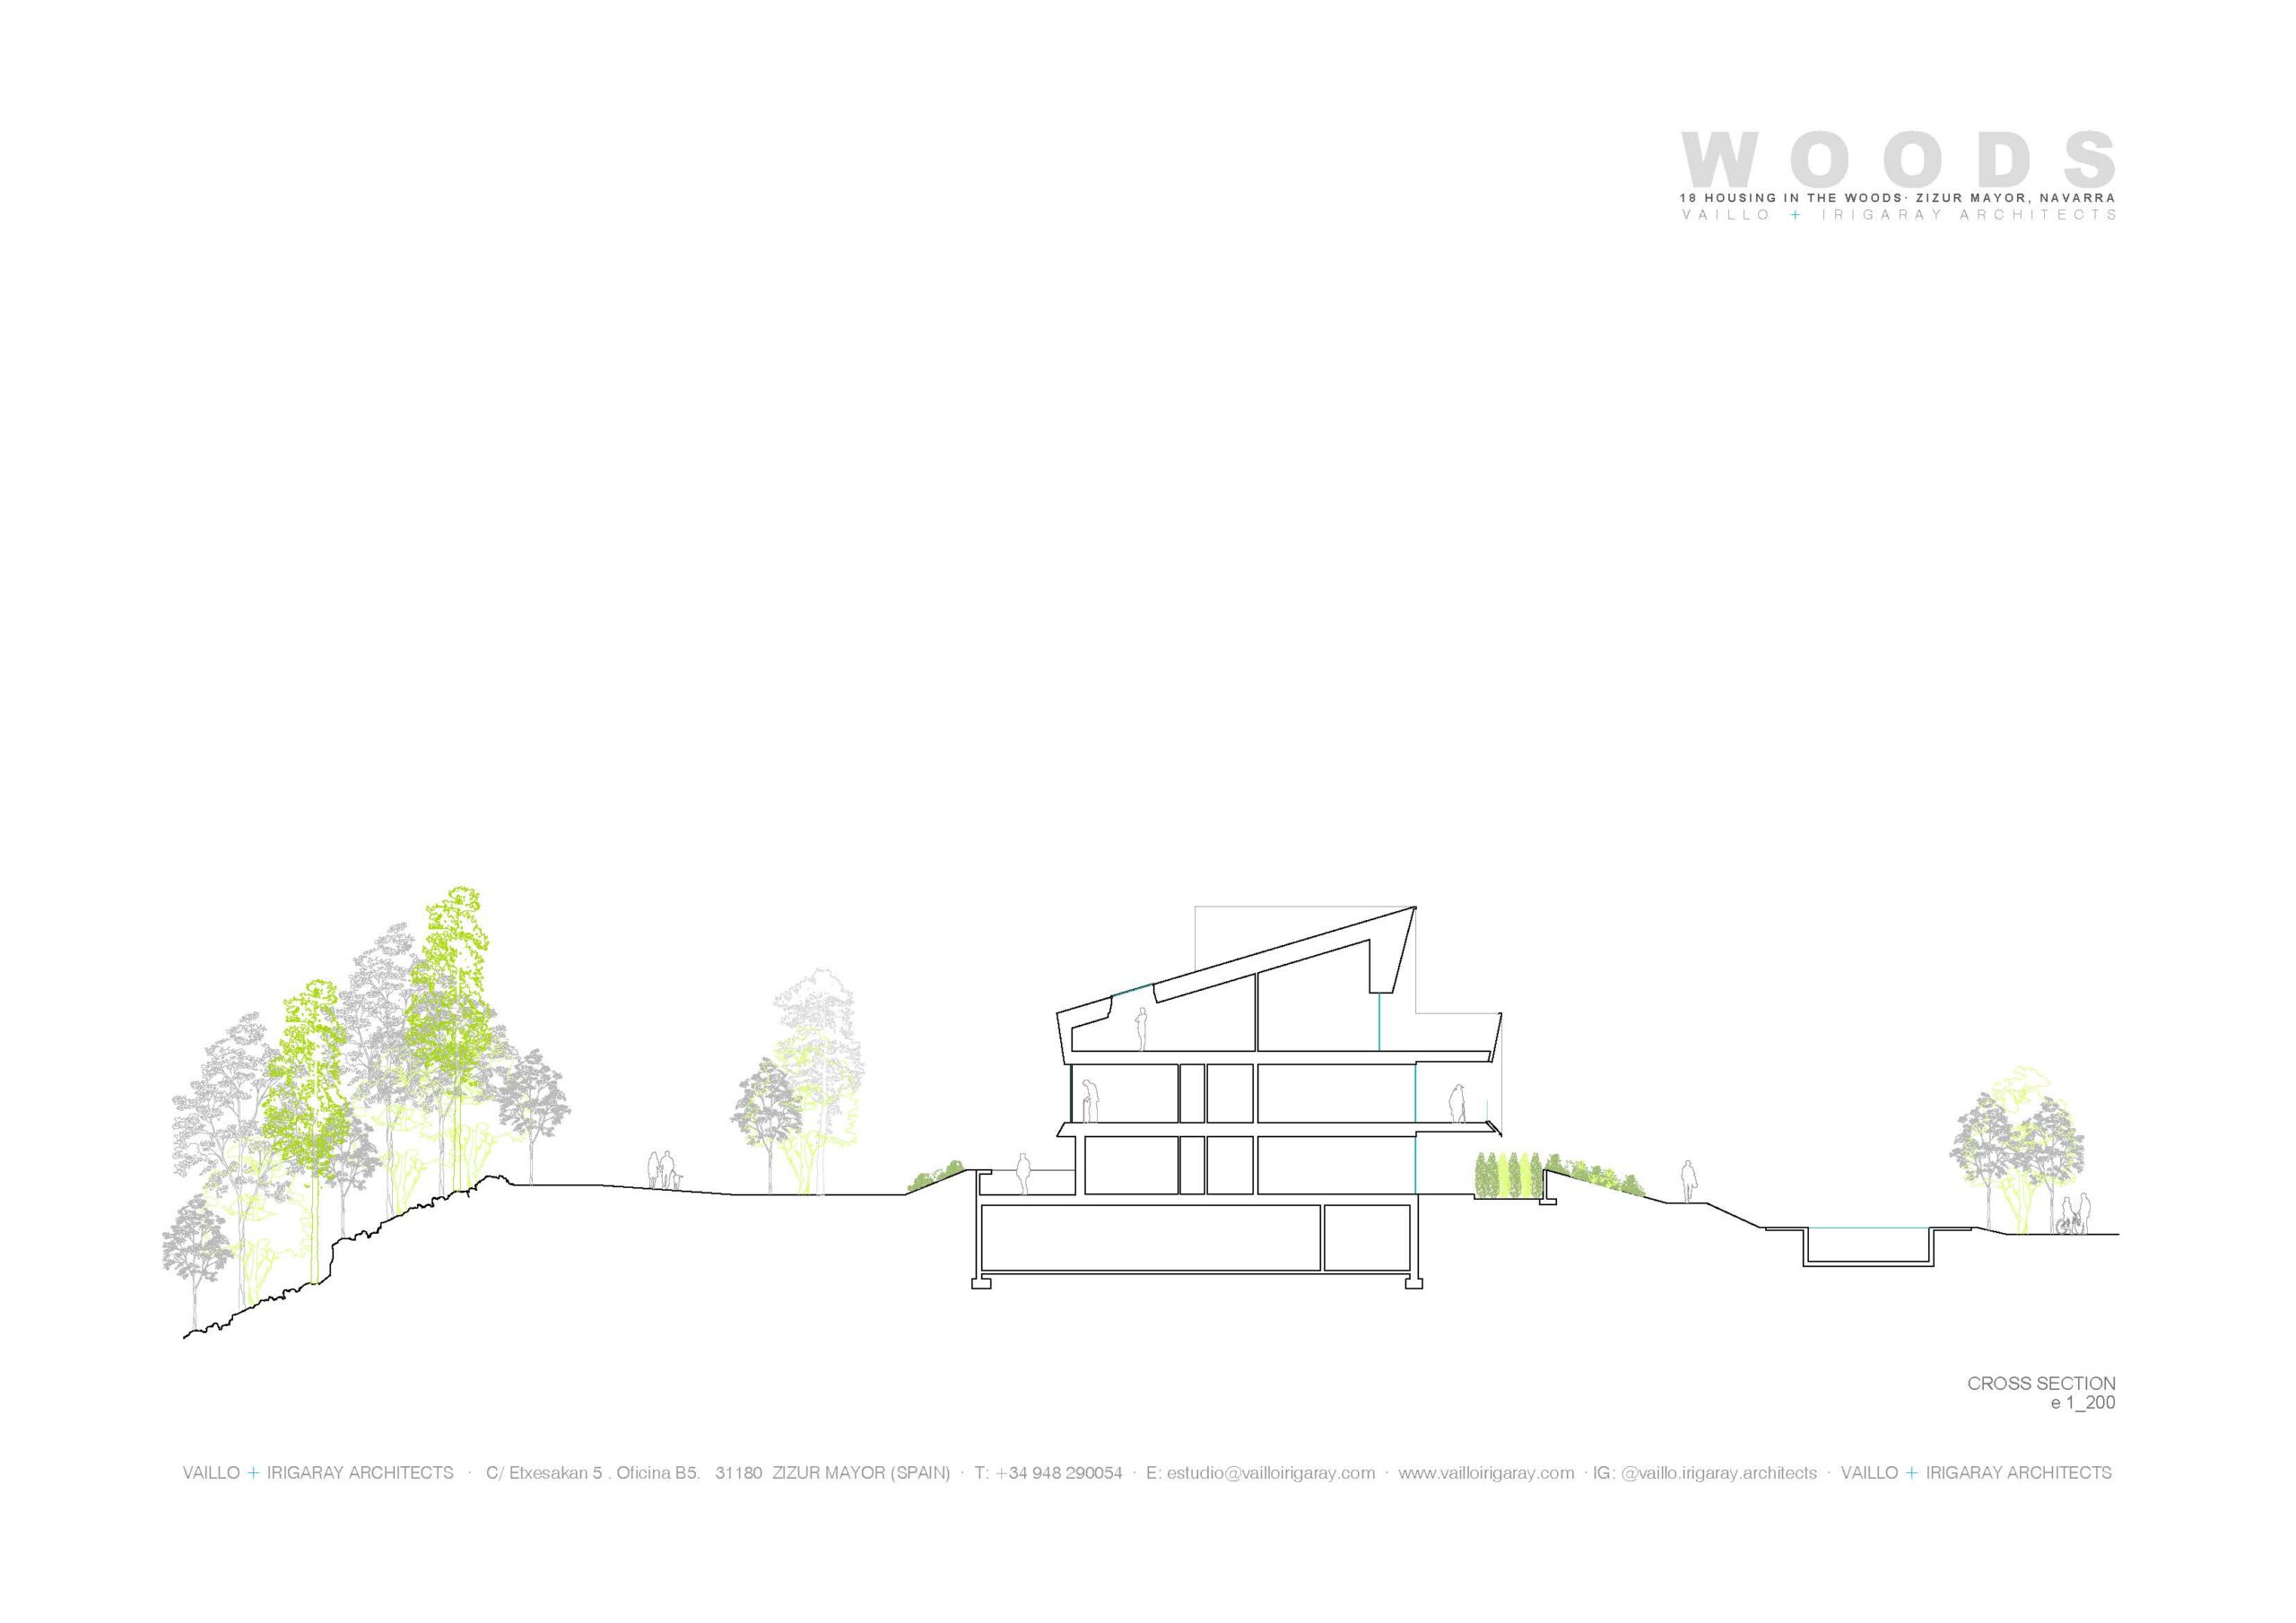 18 Viviendas en el bosque Vaillo + Irigaray Architects 6 secc trans B